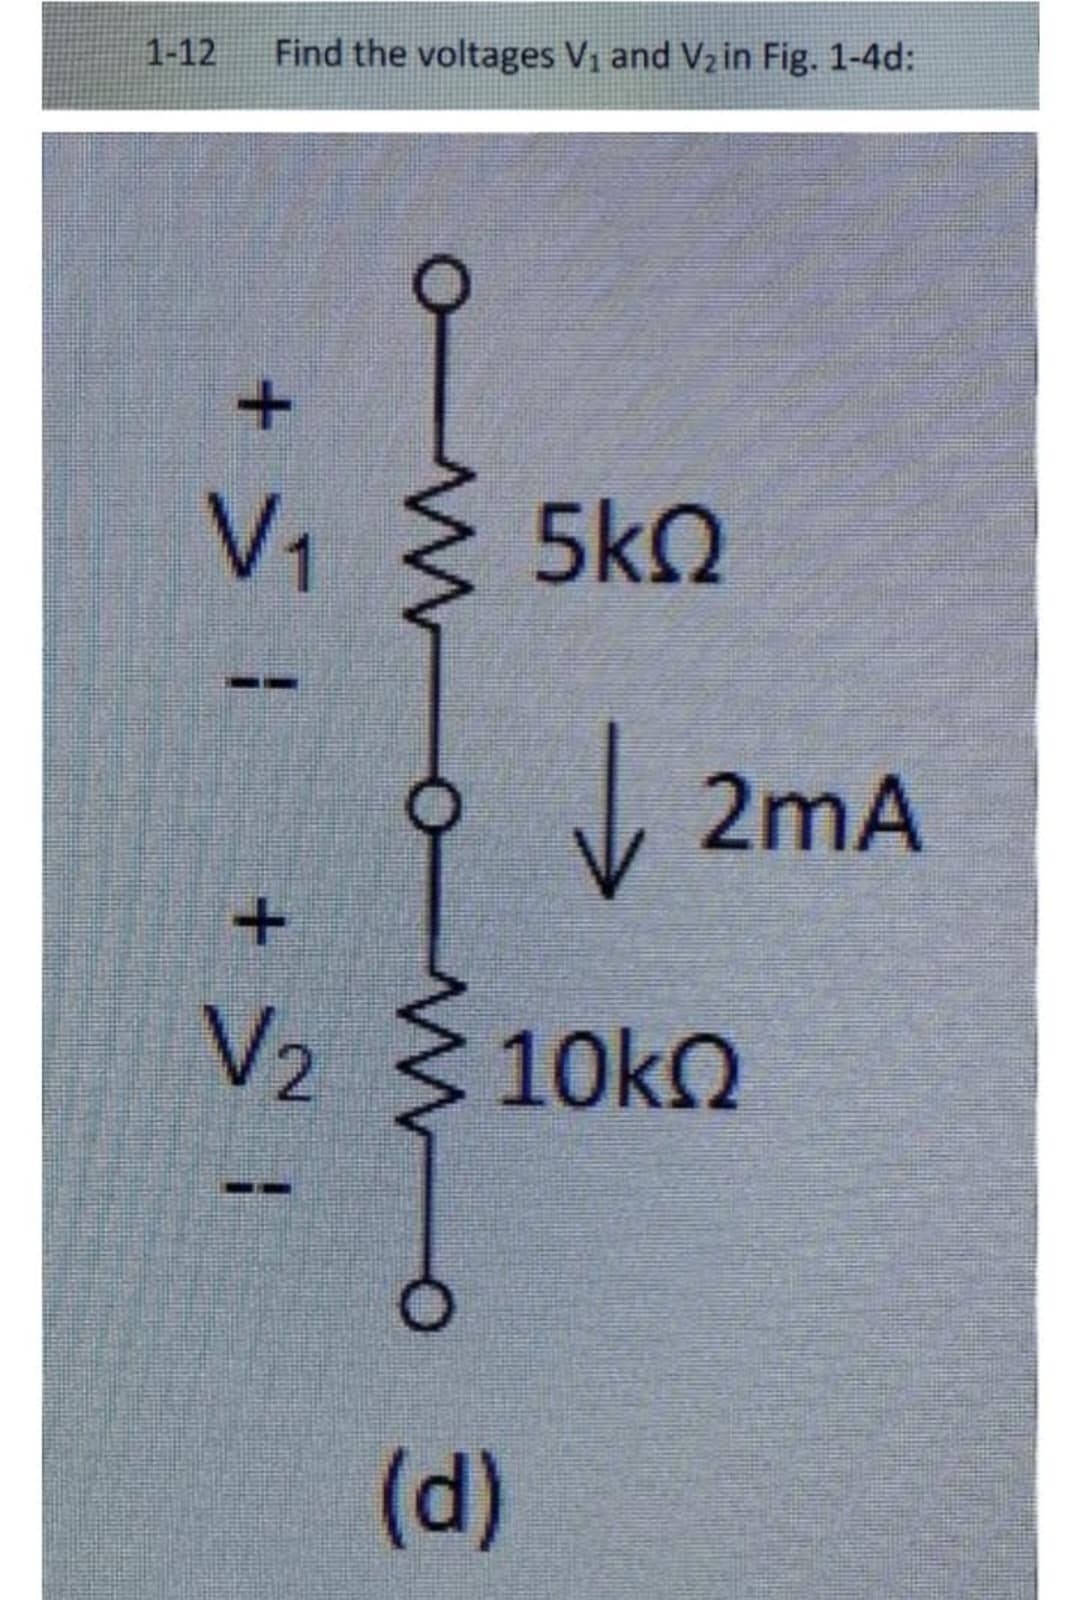 1-12 Find the voltages V₁ and V₂ in Fig. 1-4d:
| ≤ +
V₁ < 5kQ
OM O
+
O
↓
V₂ ≤ 10kQ
(d)
2mA